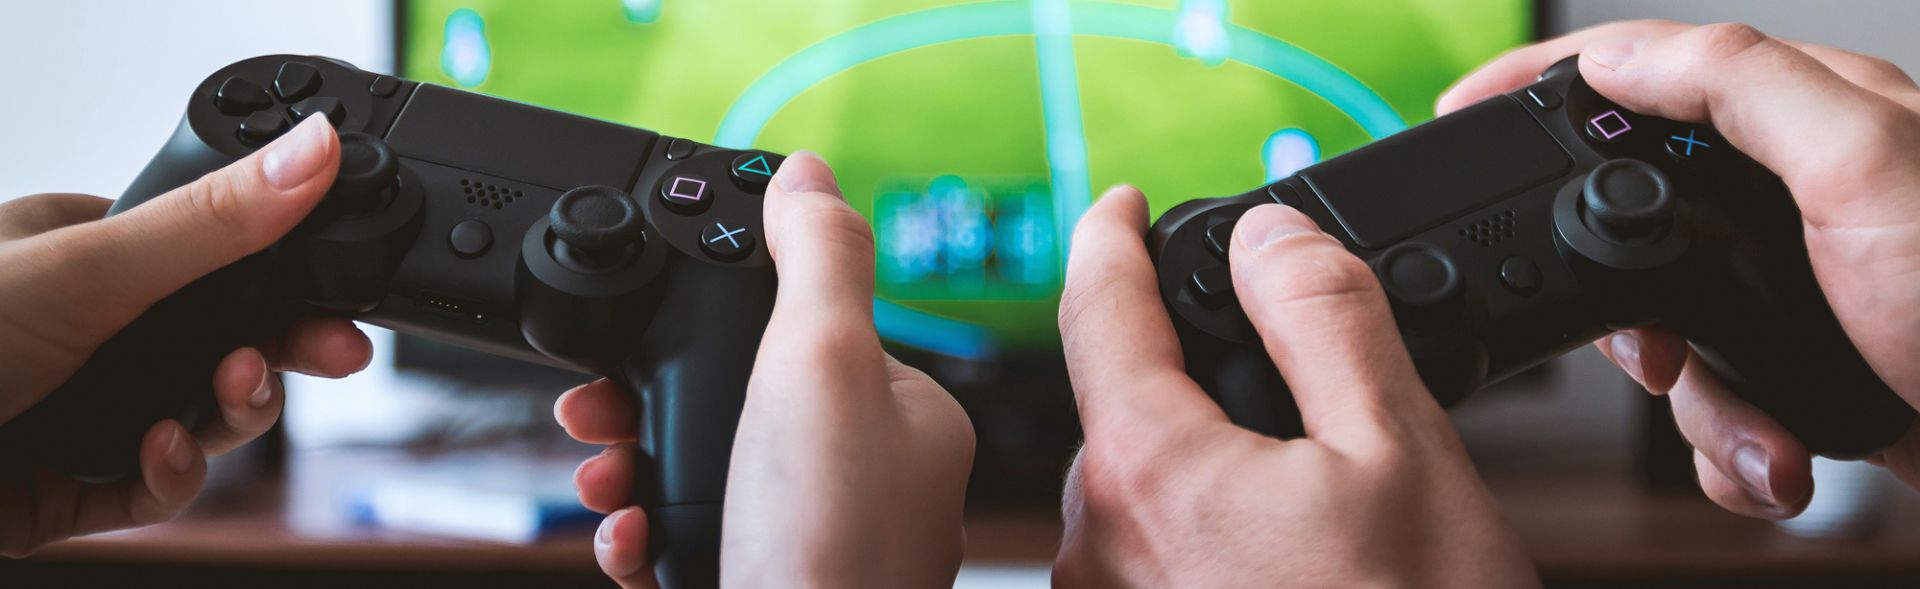 Studiu Deloitte: Generația Z preferă jocurile video în locul televizorului și filmelor